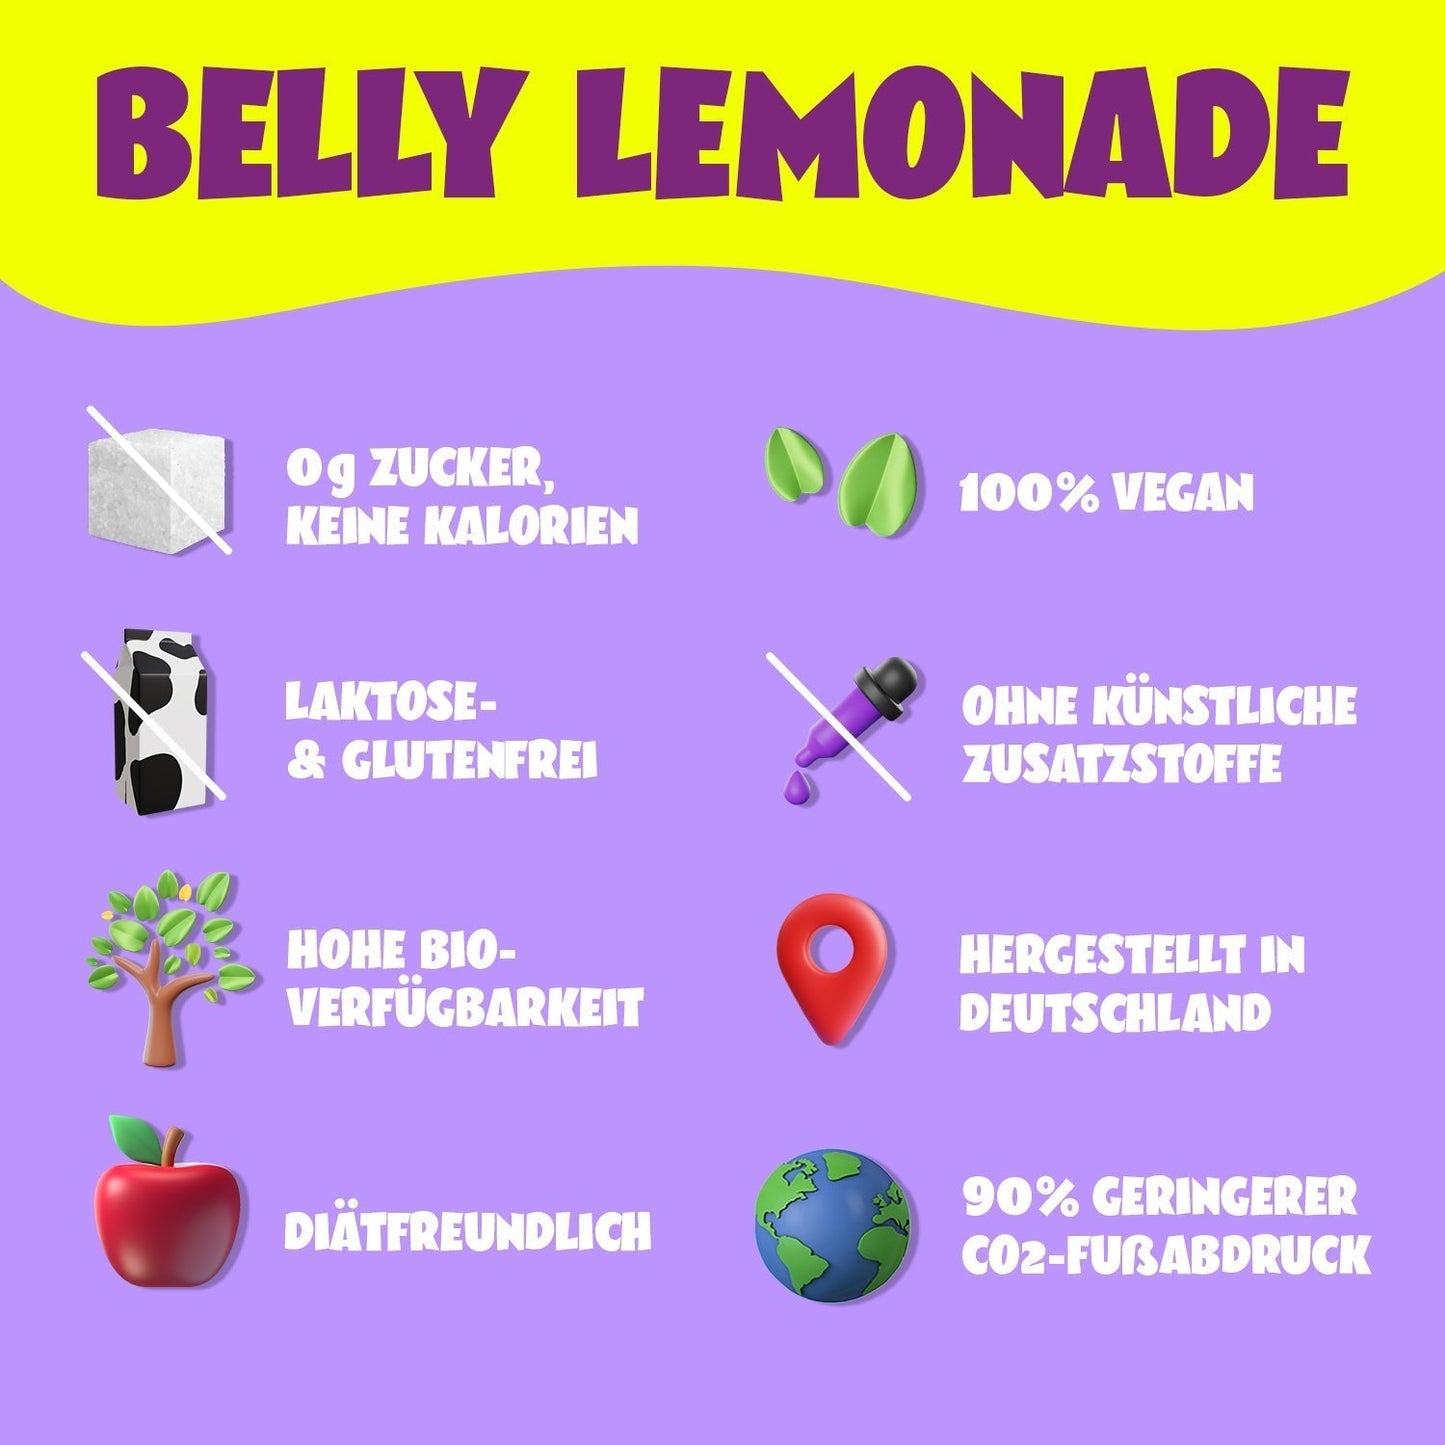 Belly Lemonade Trial Pack